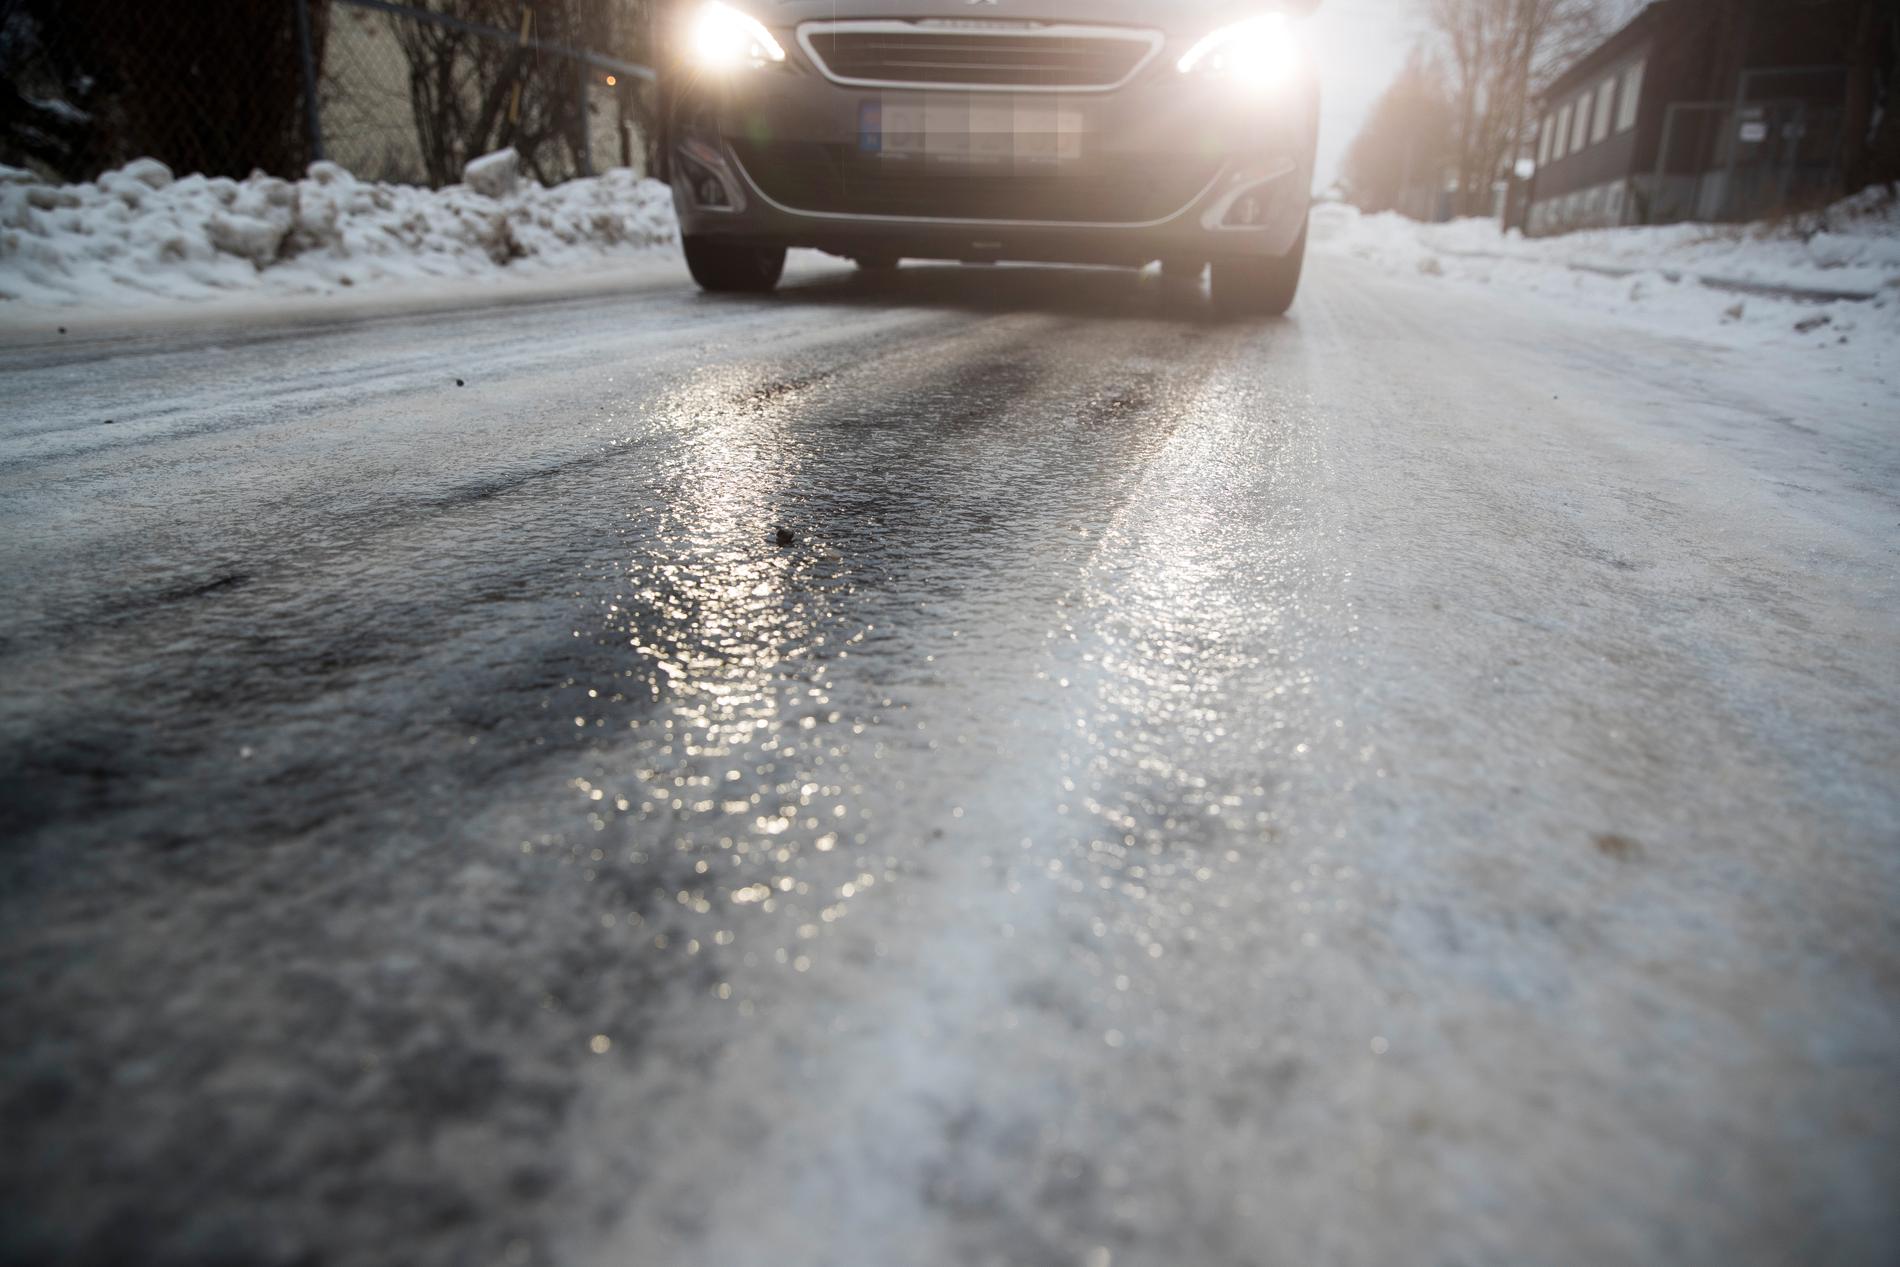 Nu varnar SMHI för regn och snö på kalla vägbanor – det kan blir riktigt halt i nästan hela landet när varmfronten med nederbörd drar in. Arkivbild.